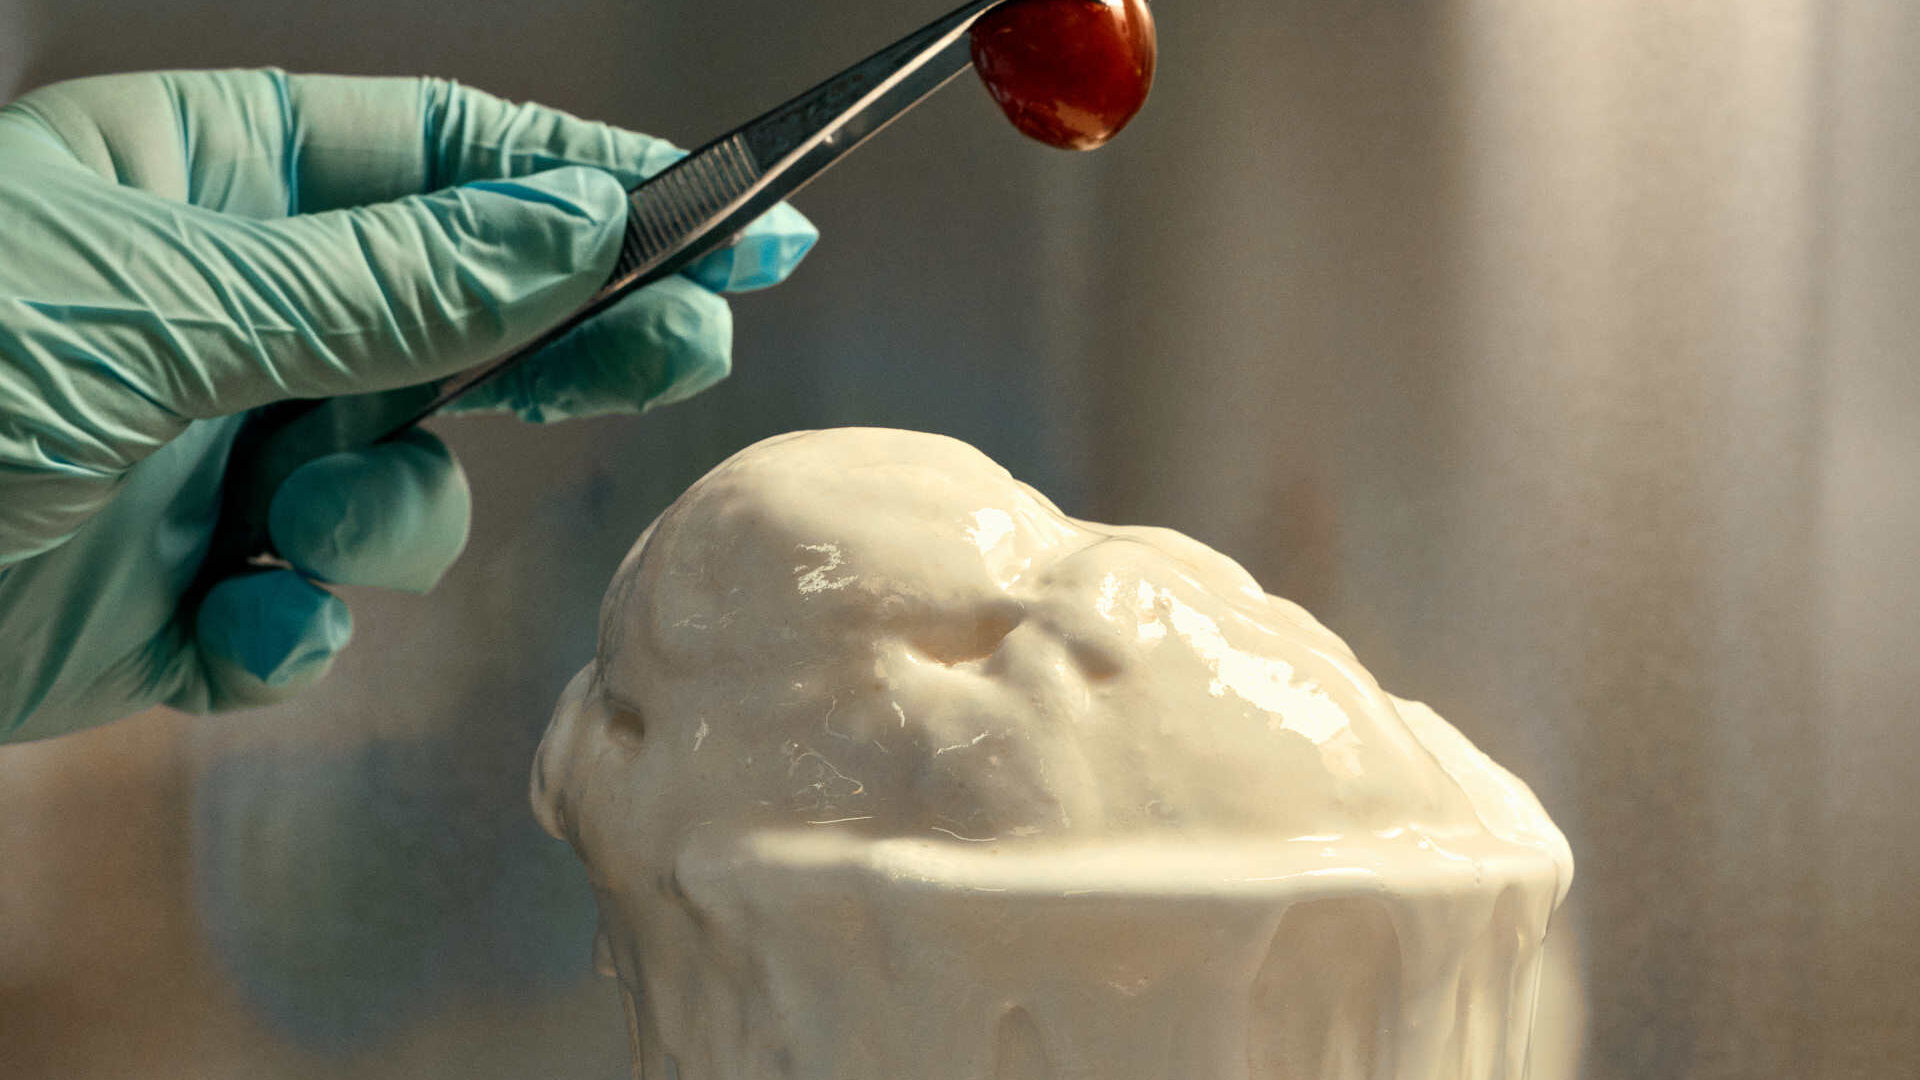 Plastique : la glace à la vanille d'Eleonora Ortolani fabriquée à partir de déchets plastiques